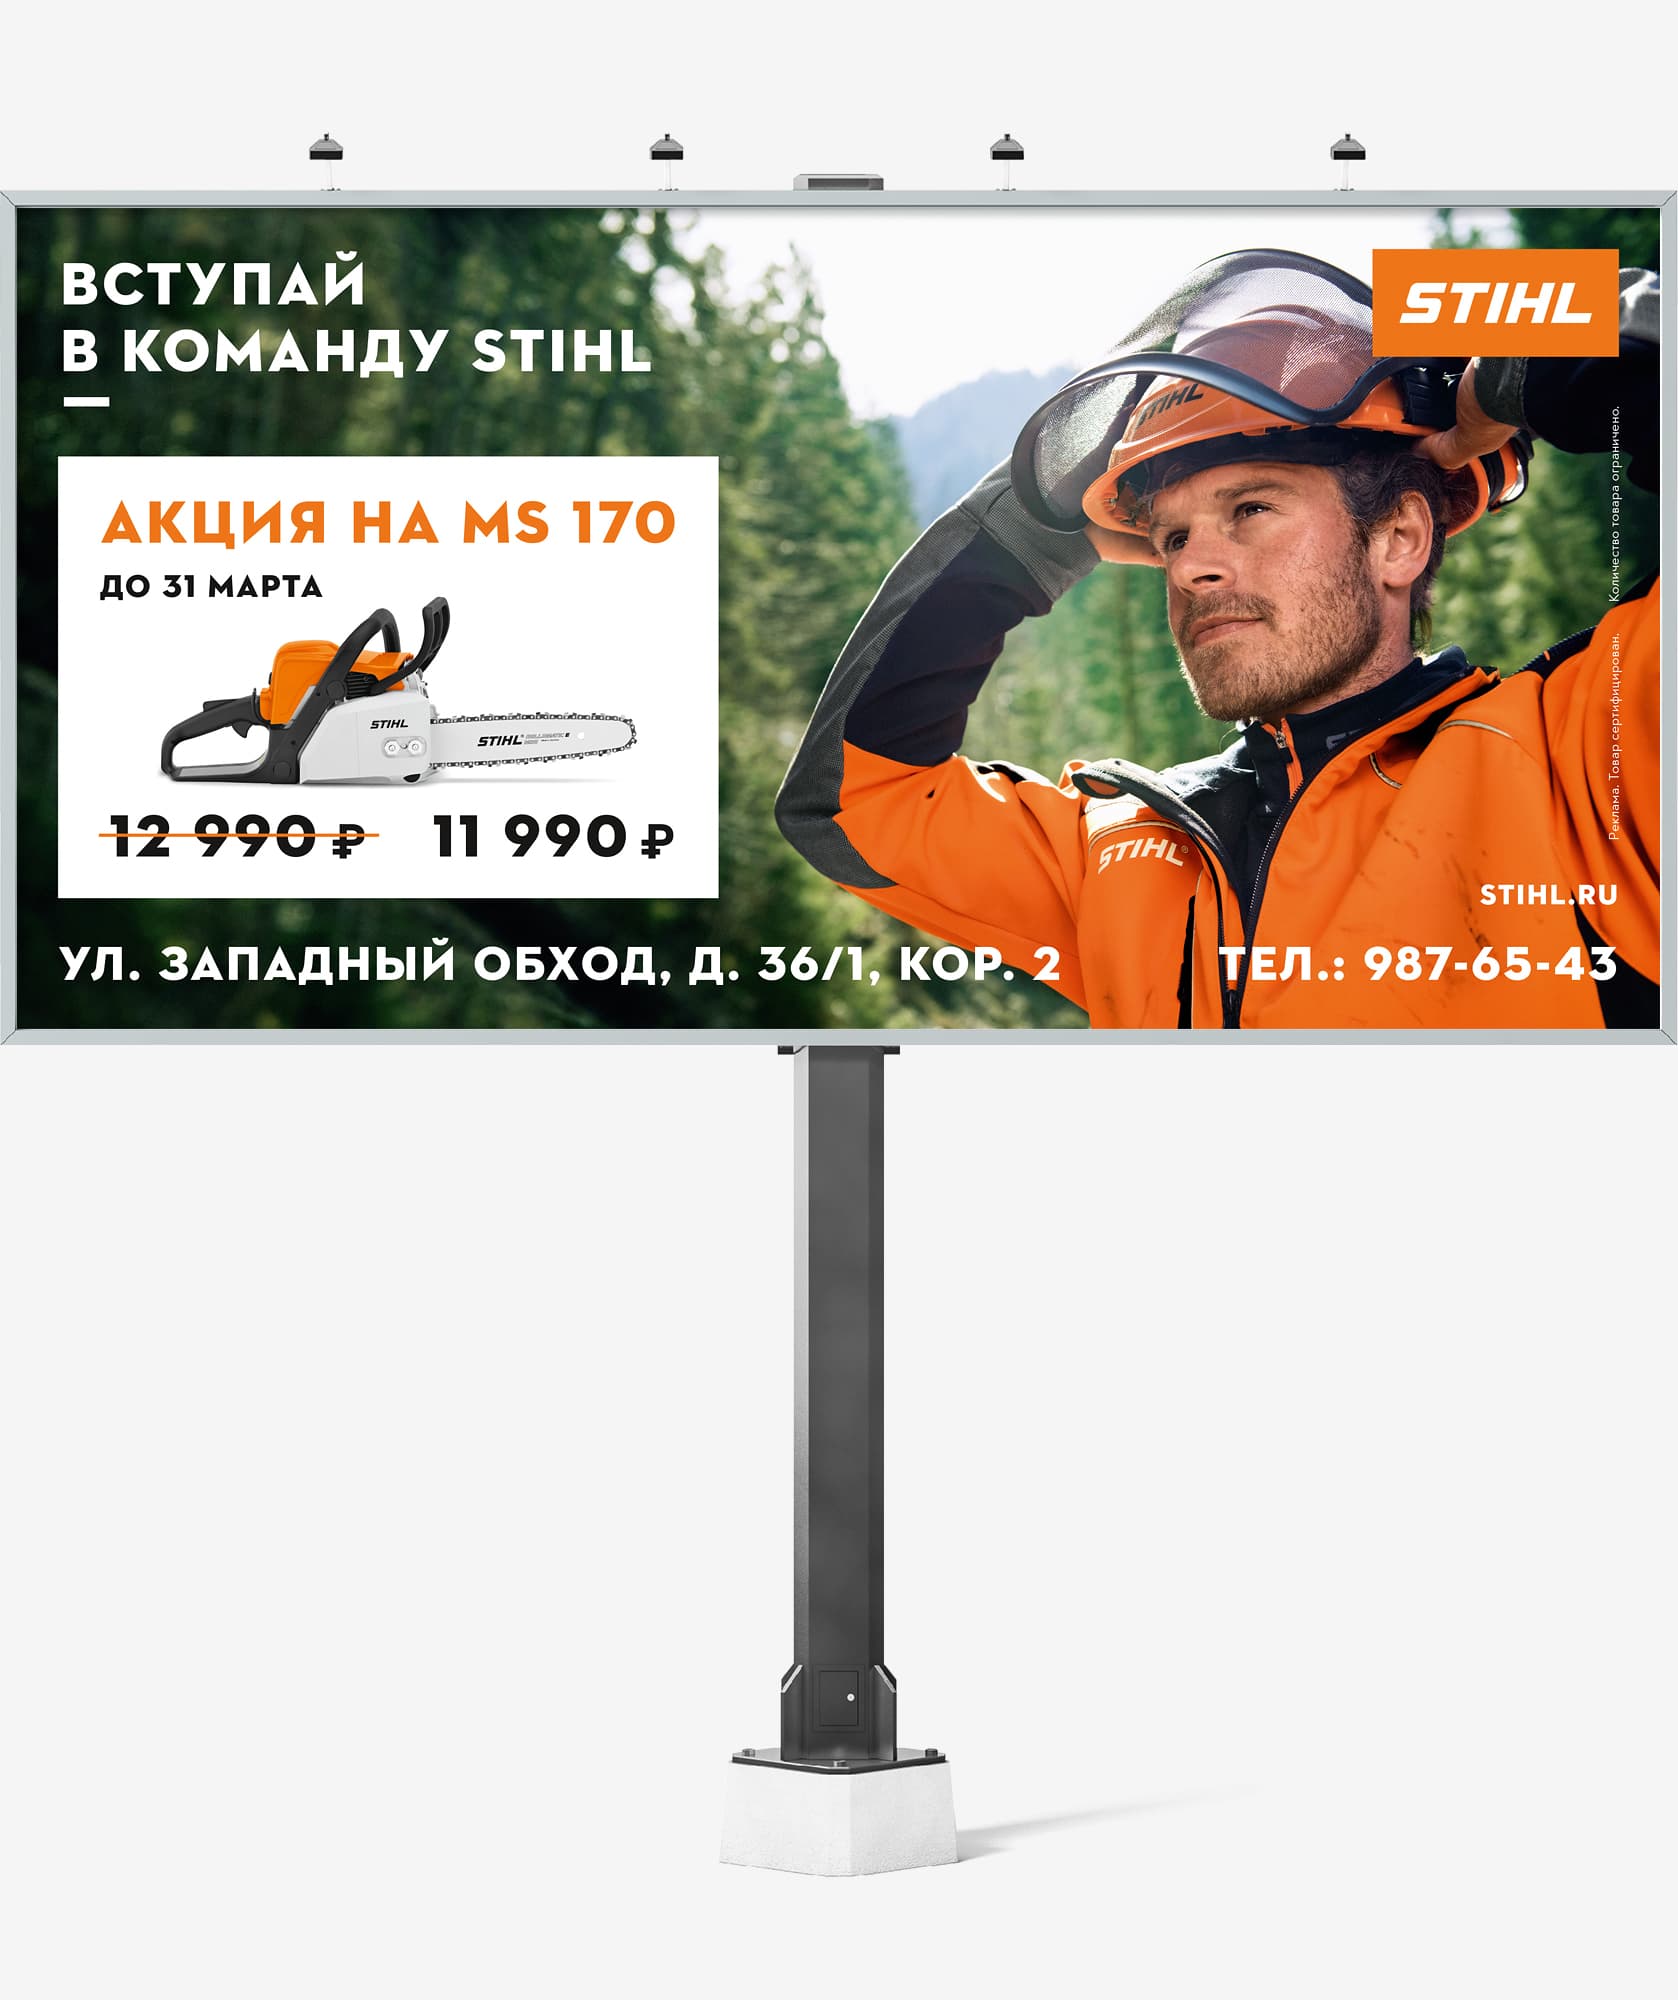 Разработка дизайна акционных билбордов на бензопилу STIHL MS 170